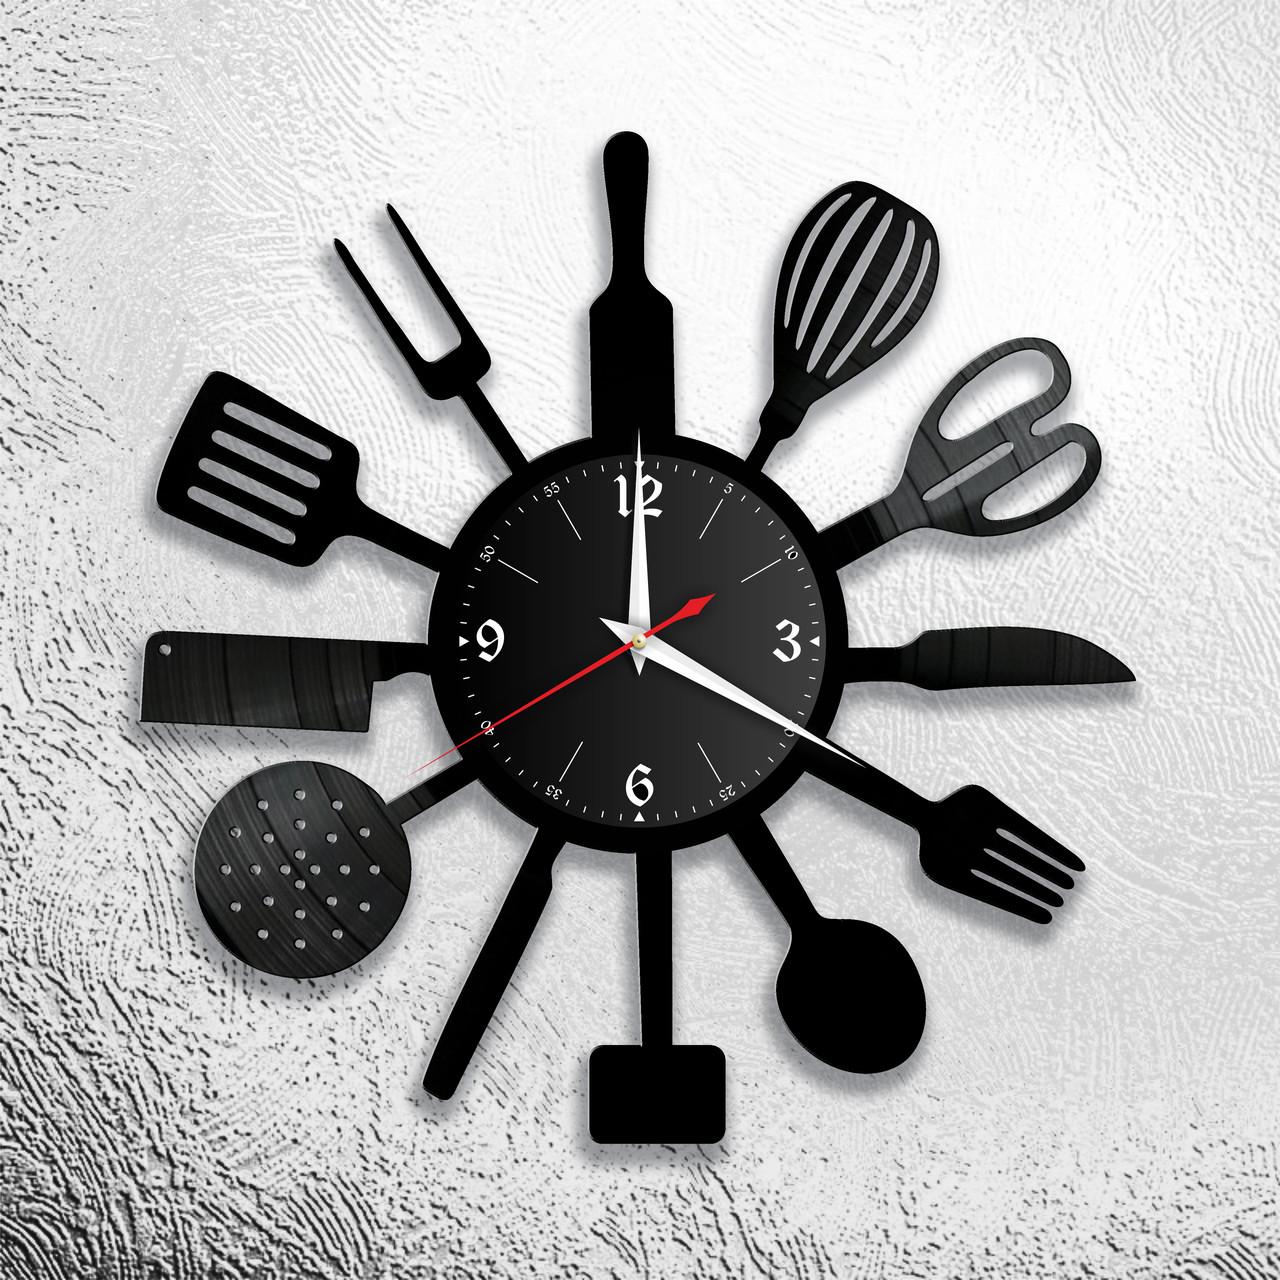 Оригинальные часы из виниловых пластинок "Кухня" Версия 1